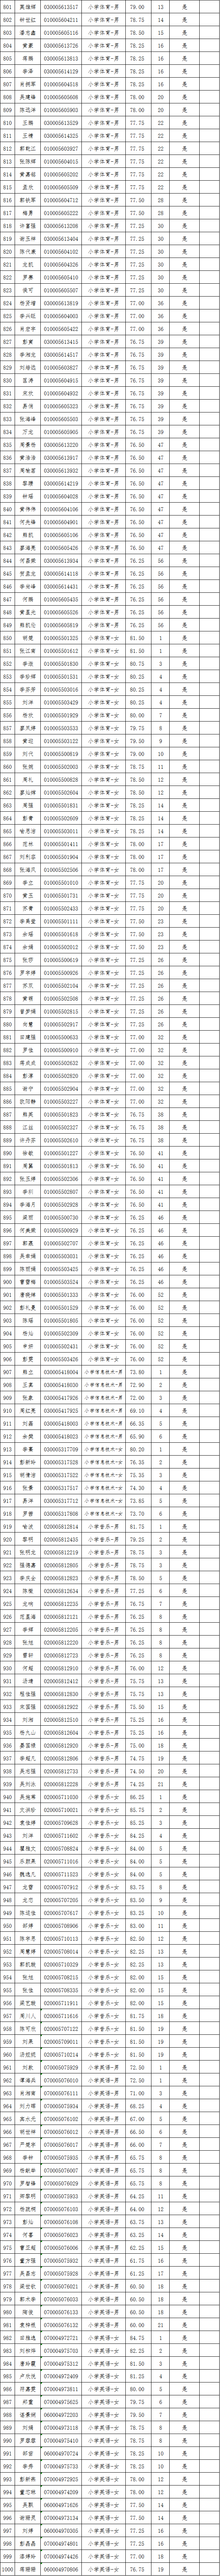 2021年长沙县第—批教师招聘入围试教人员名单公示(图14)